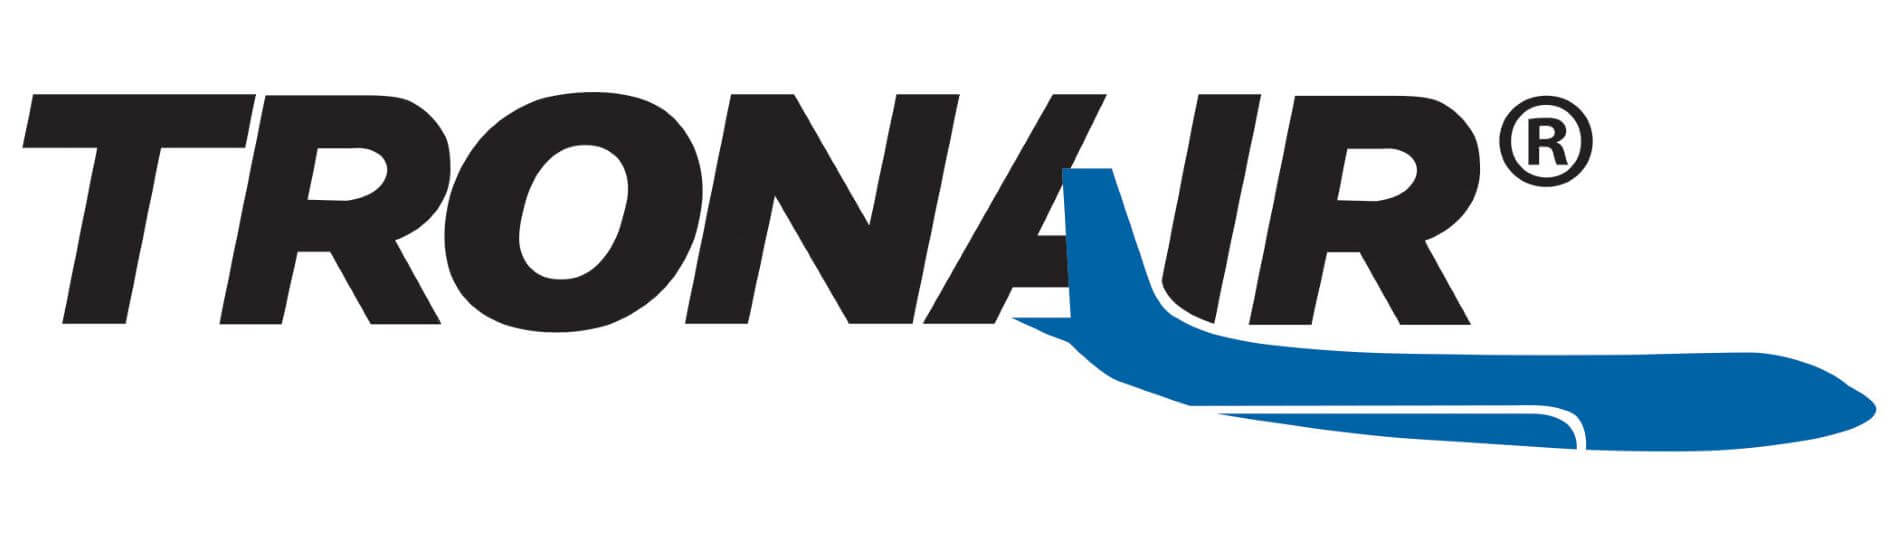 Tronair logo